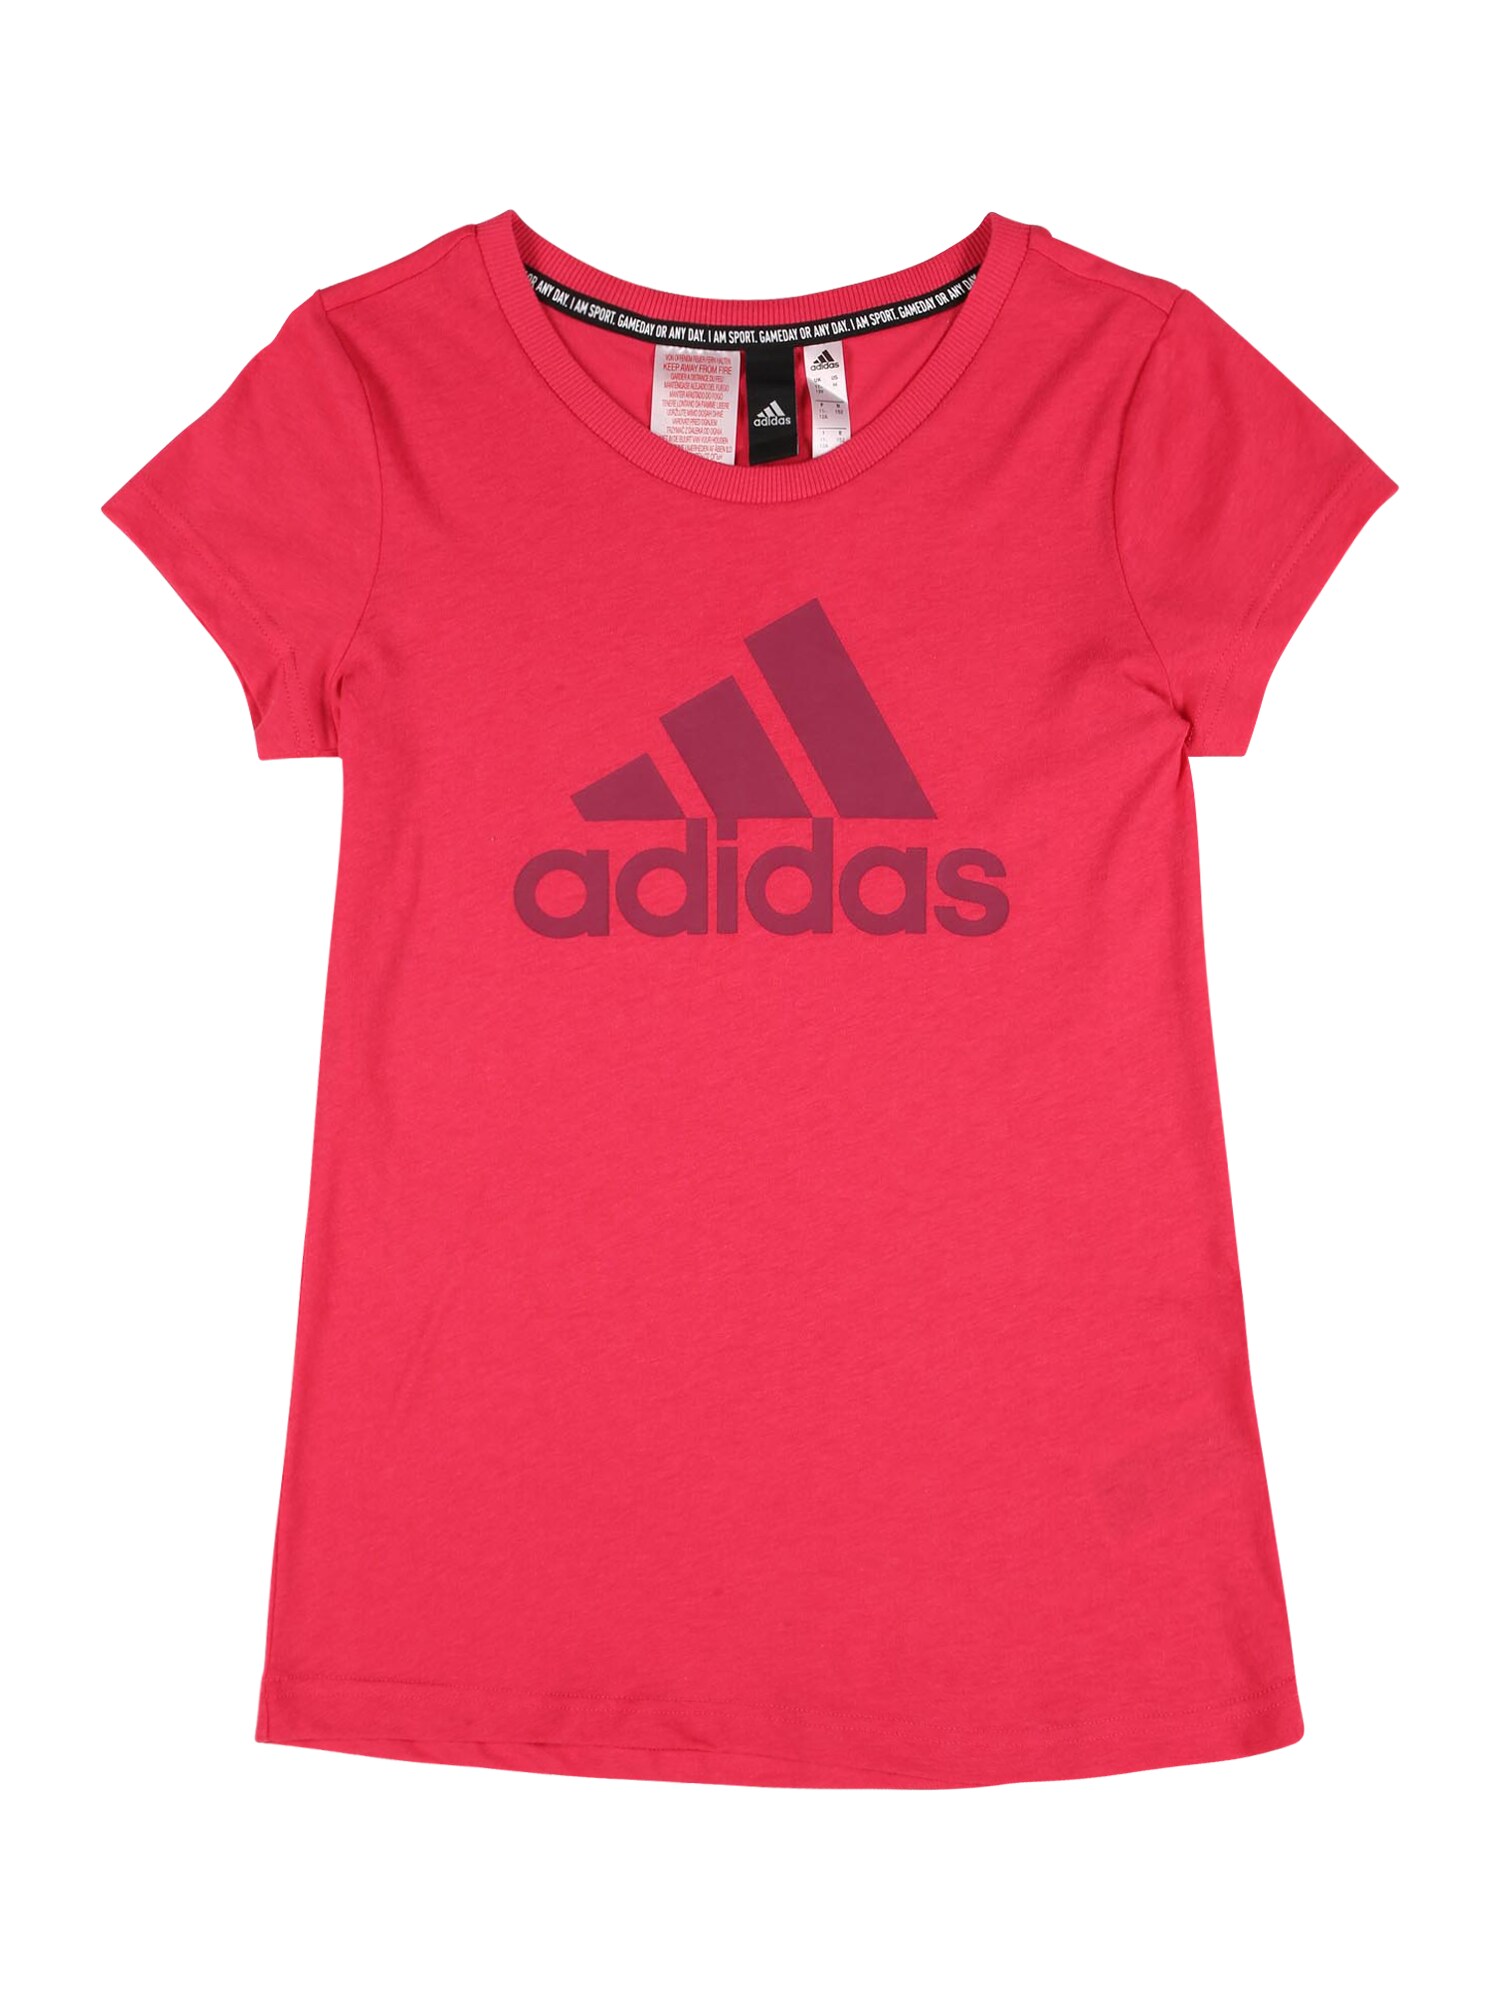 ADIDAS PERFORMANCE Sportiniai marškinėliai  rožinė / eozino spalva